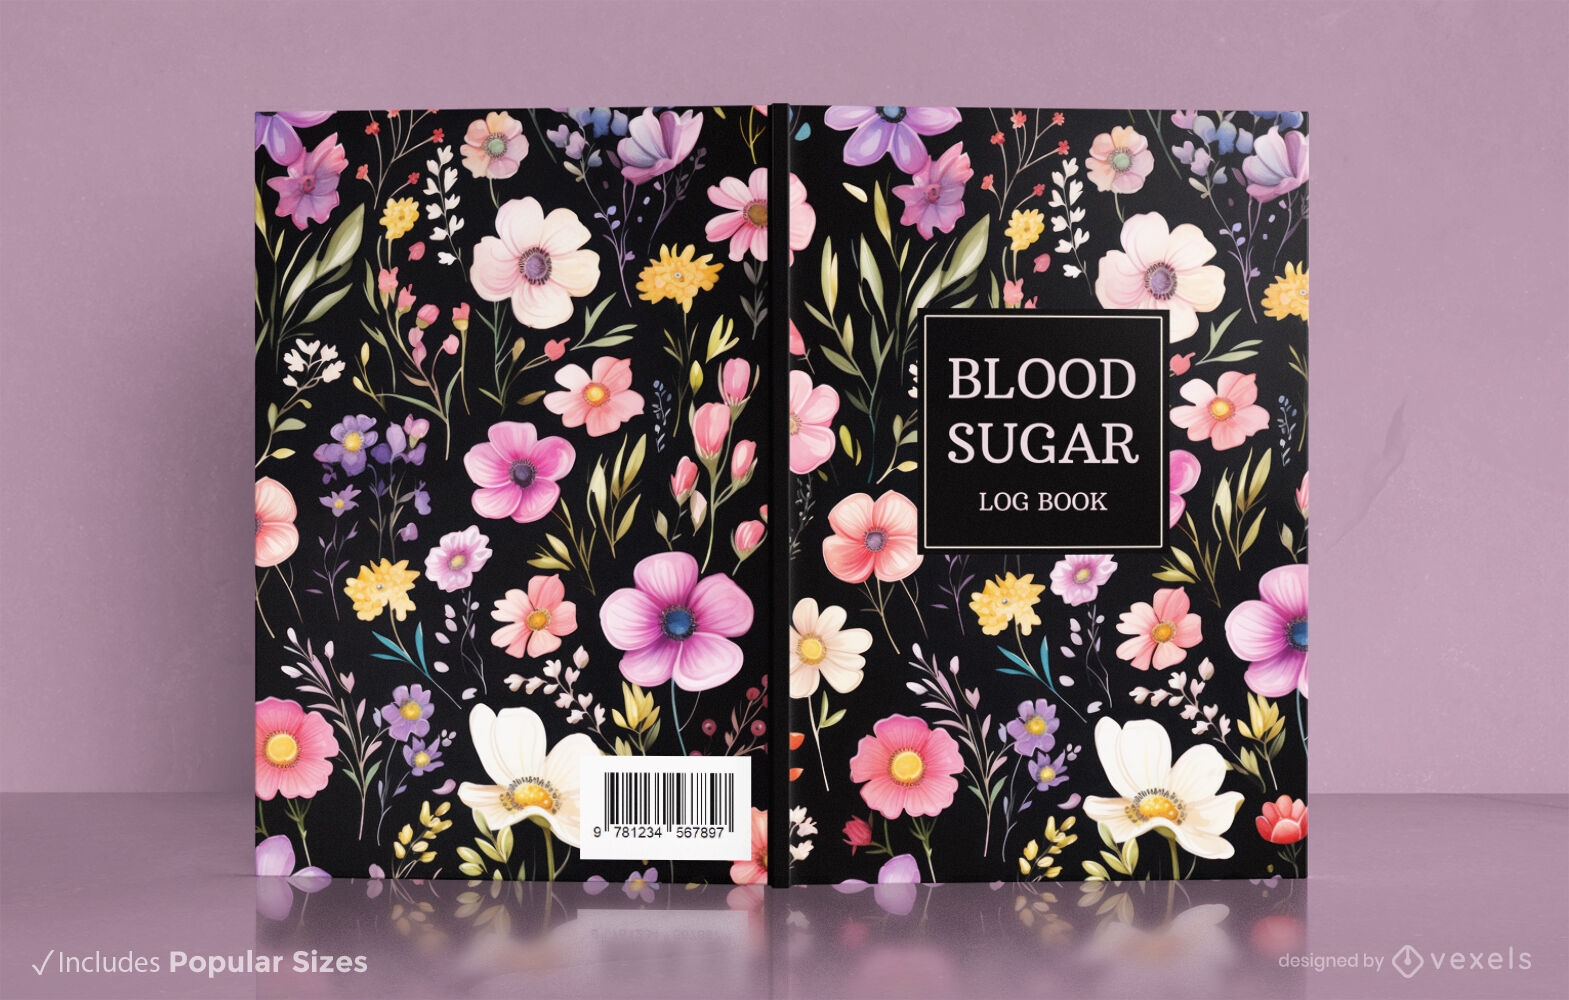 Diseño floral de portada de libro sobre azúcar en sangre.